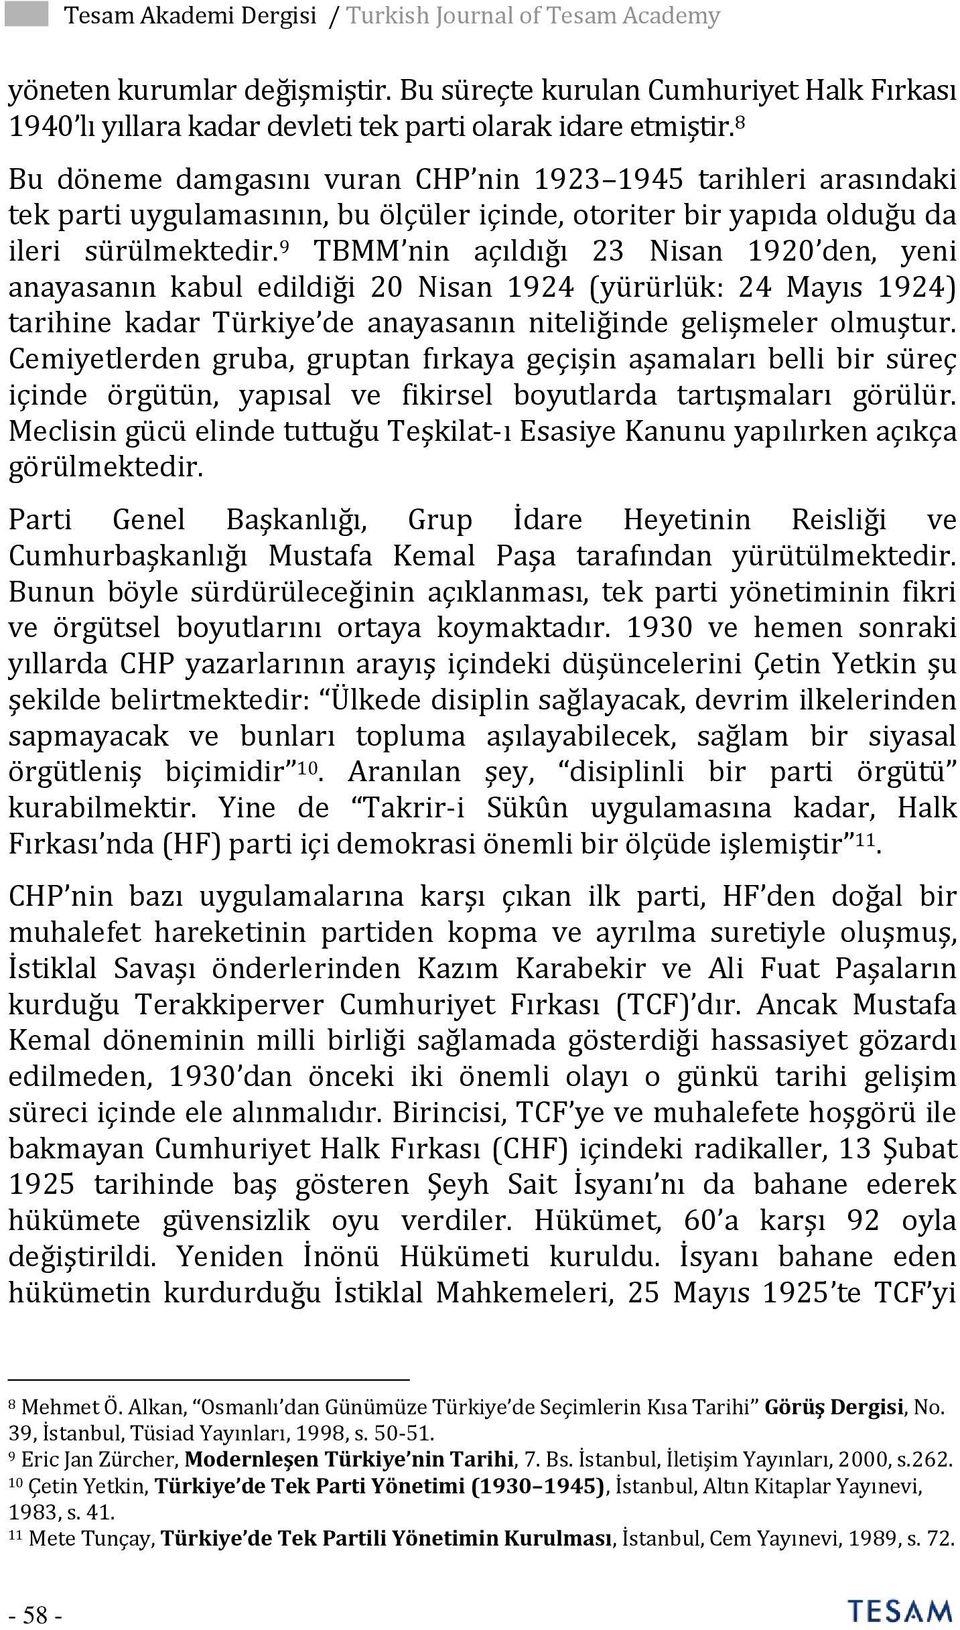 9 TBMM nin açıldığı 23 Nisan 1920 den, yeni anayasanın kabul edildiği 20 Nisan 1924 (yürürlük: 24 Mayıs 1924) tarihine kadar Türkiye de anayasanın niteliğinde gelişmeler olmuştur.